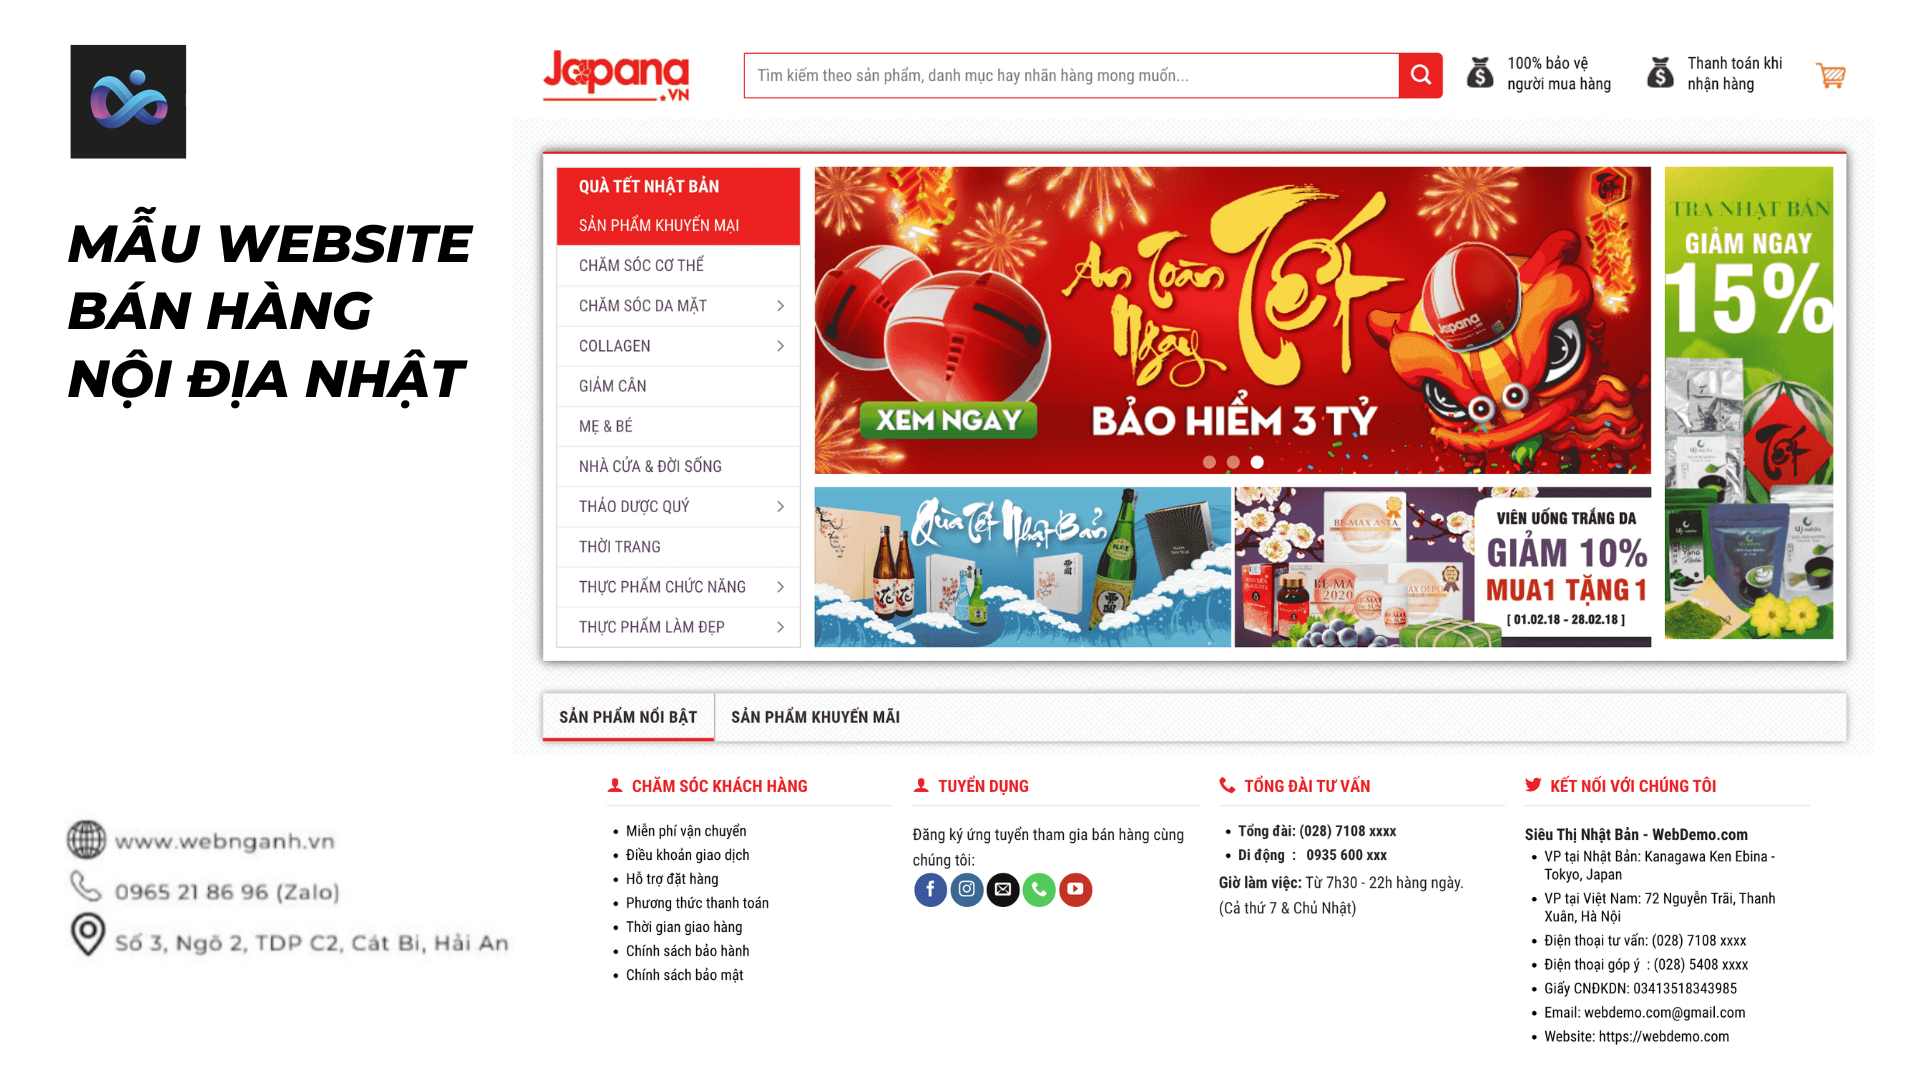 Mẫu Website bán hàng nội địa Nhật